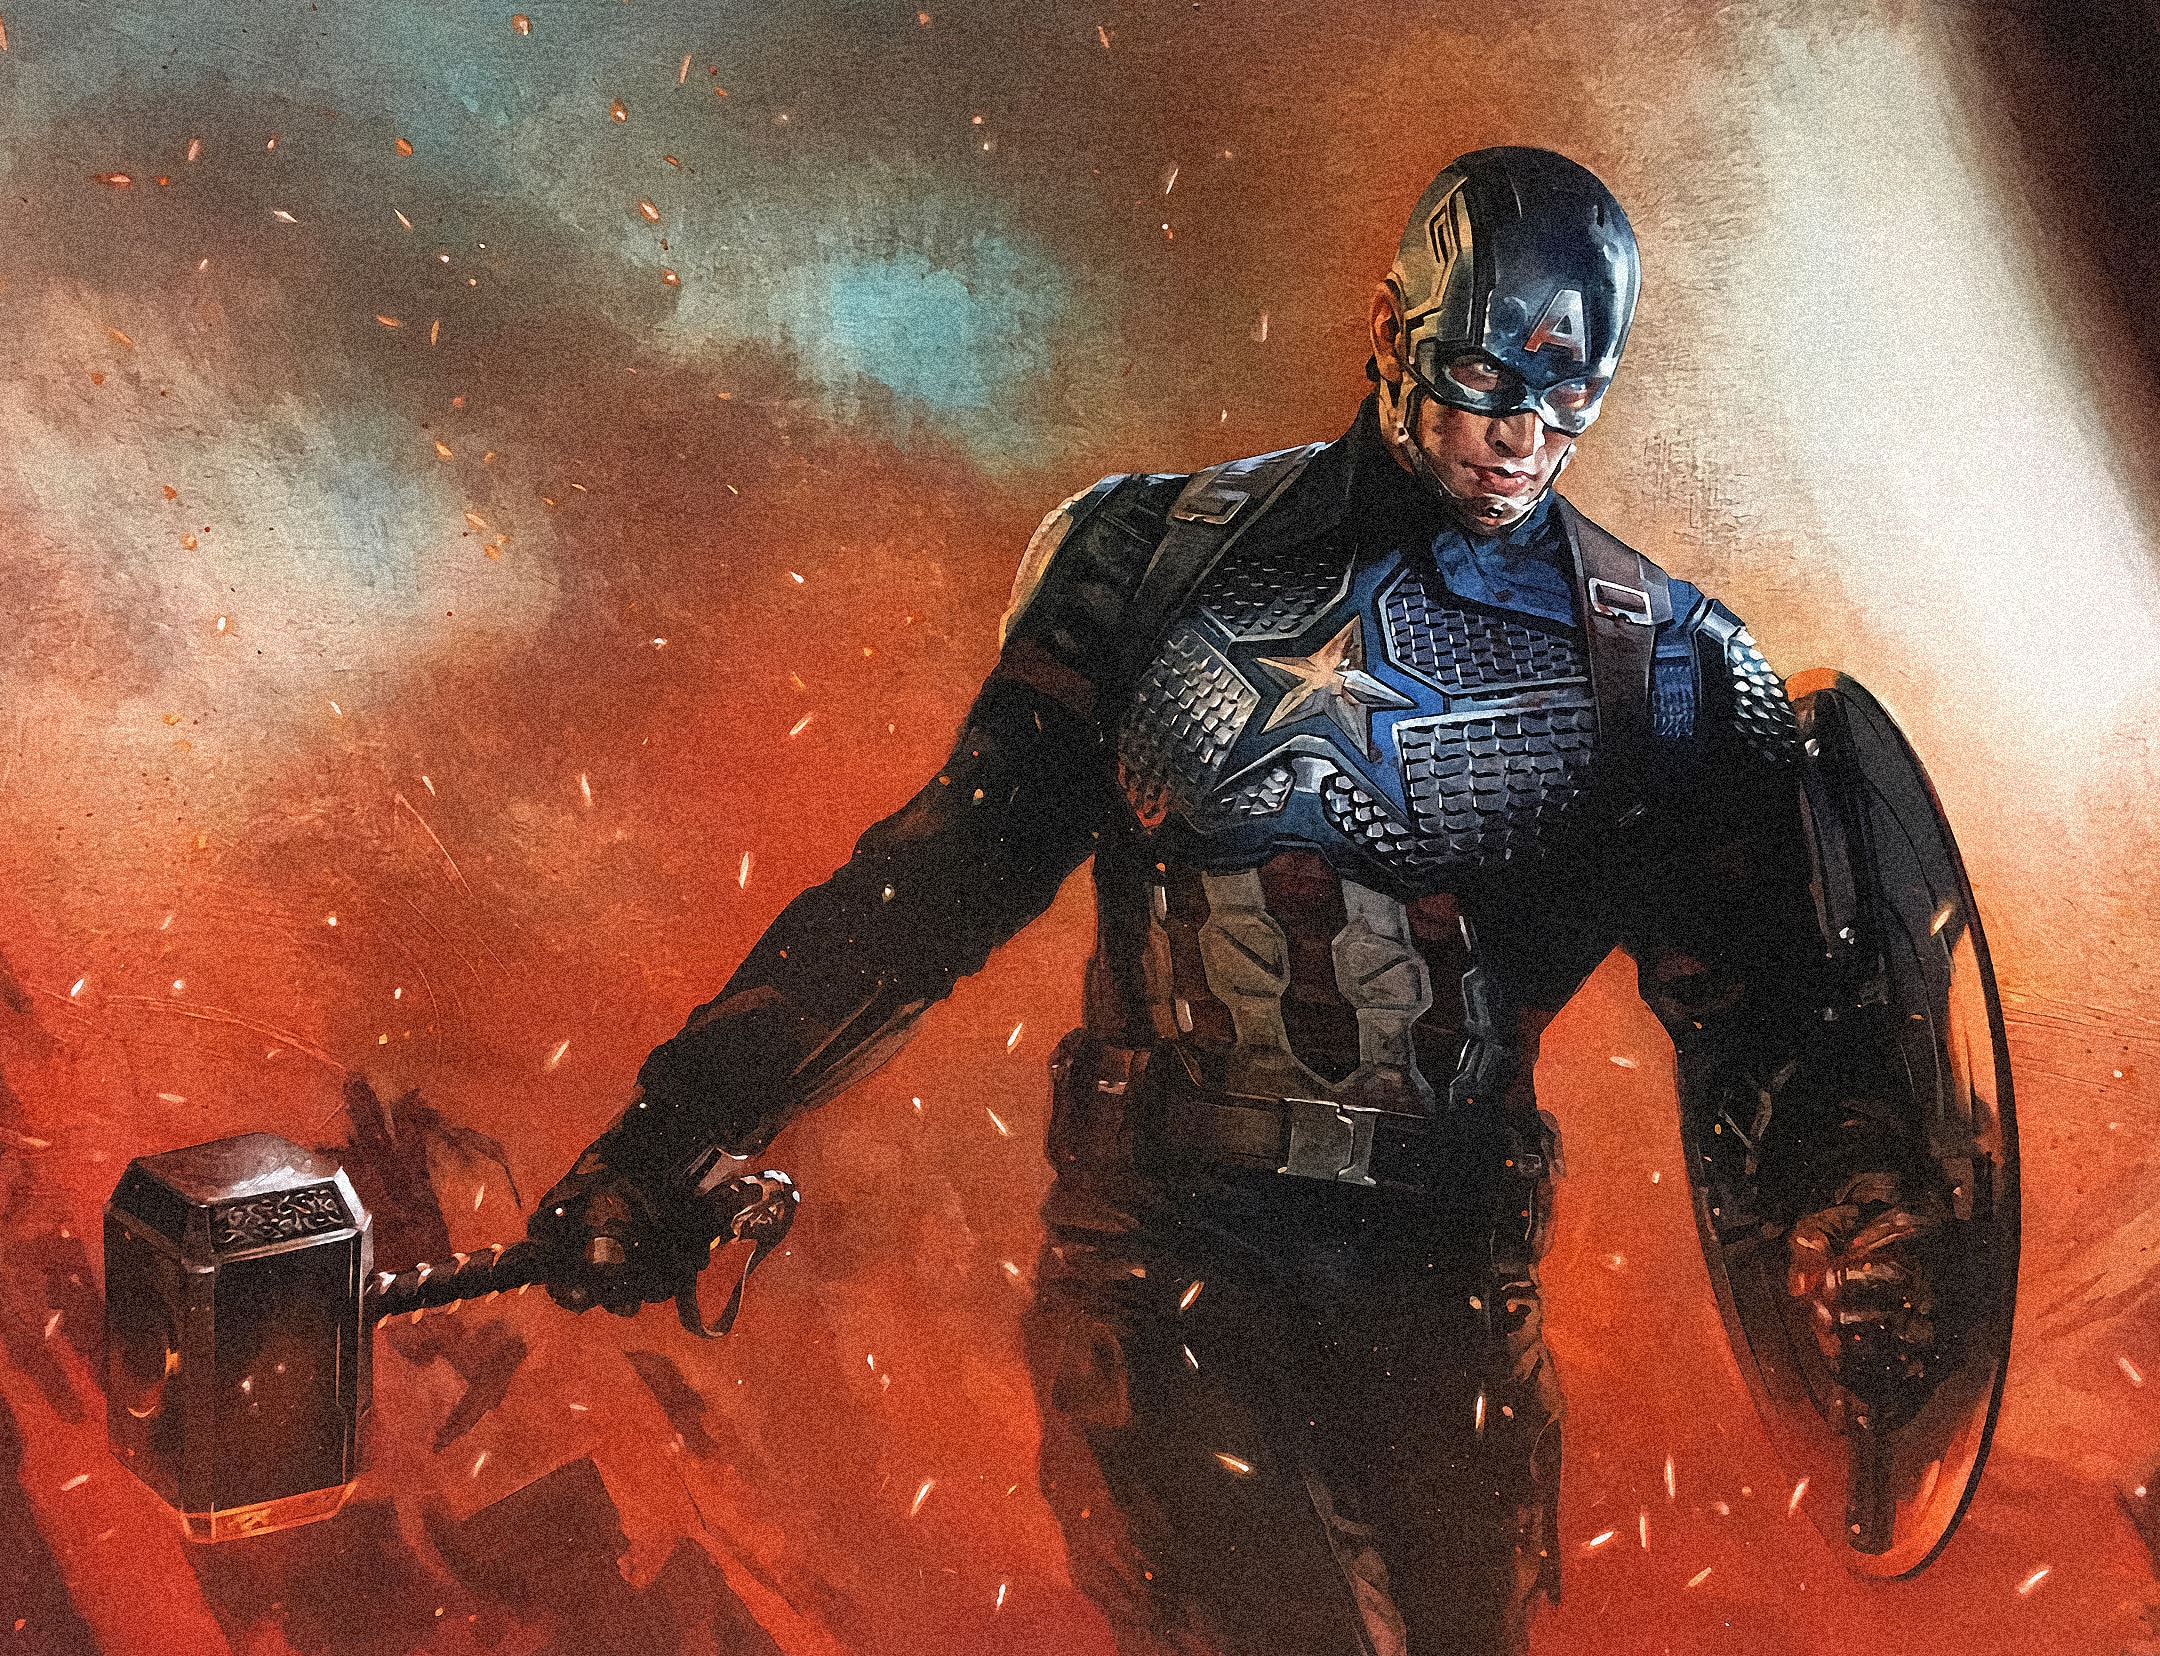 Wallpaper of Avengers EndGame, Captain America, Mjölnir